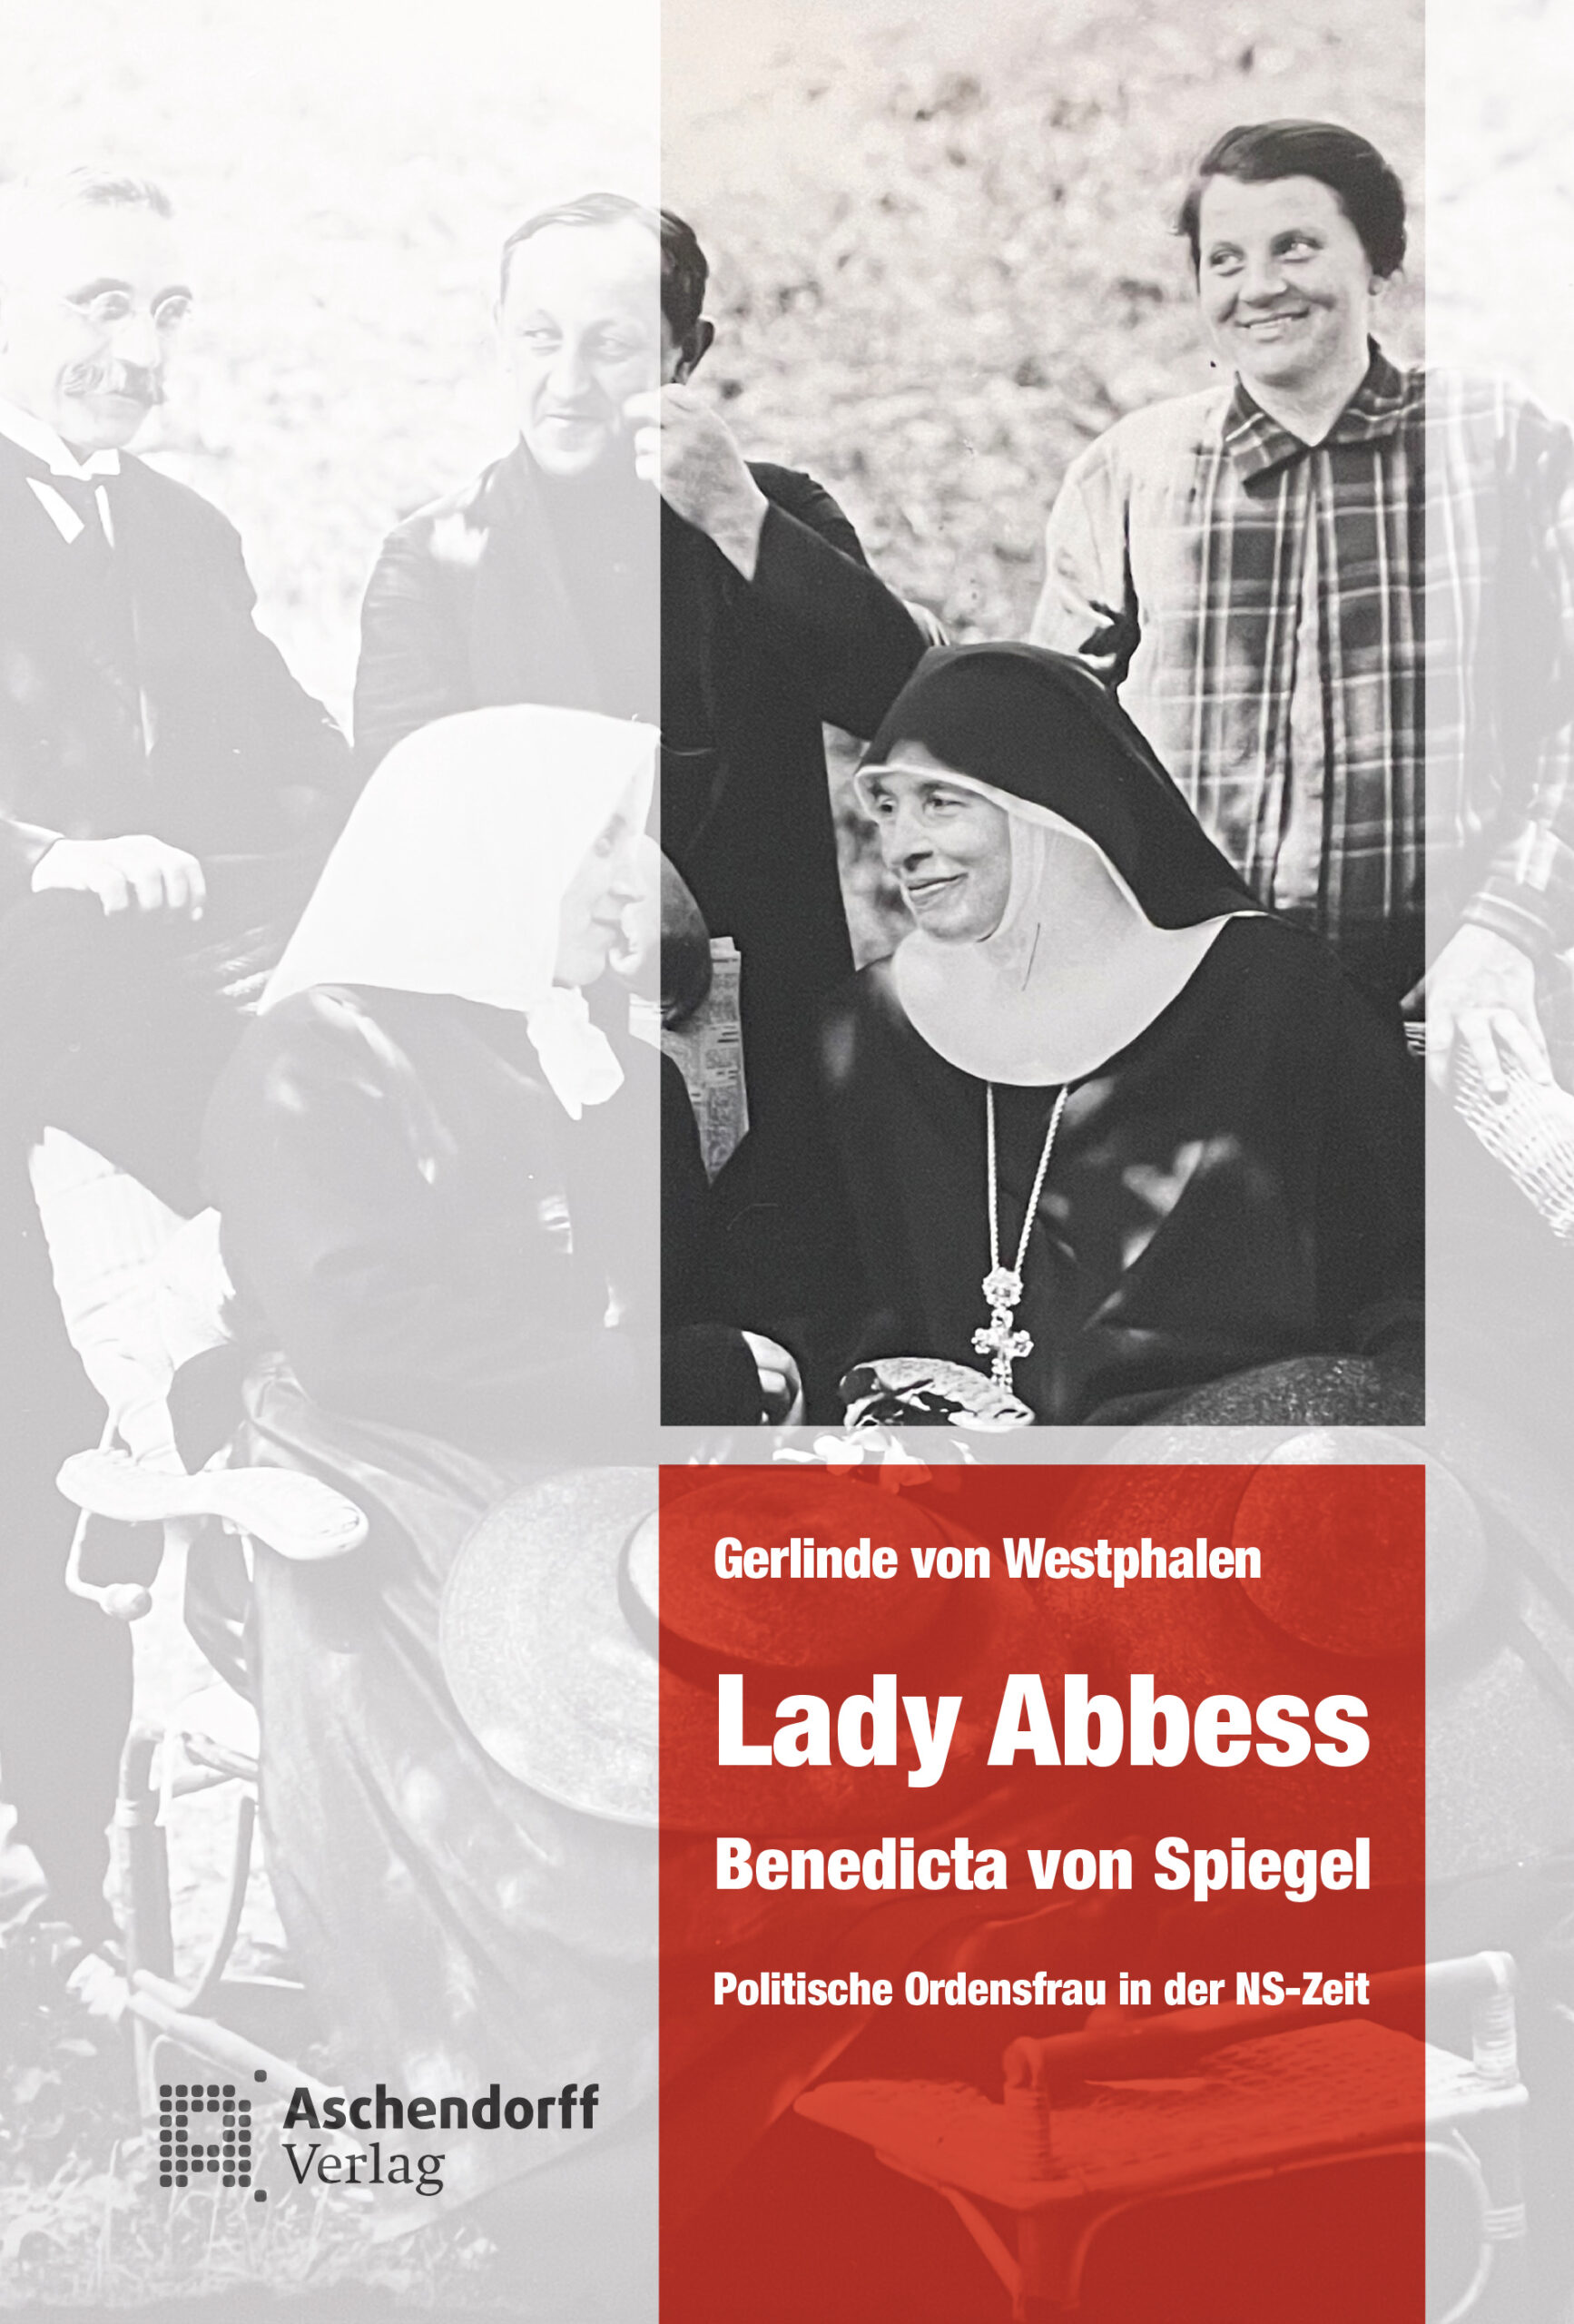 Lady Abbess, Benedicta von Spiegel - Politische Ordensfrau in der NS-Zeit